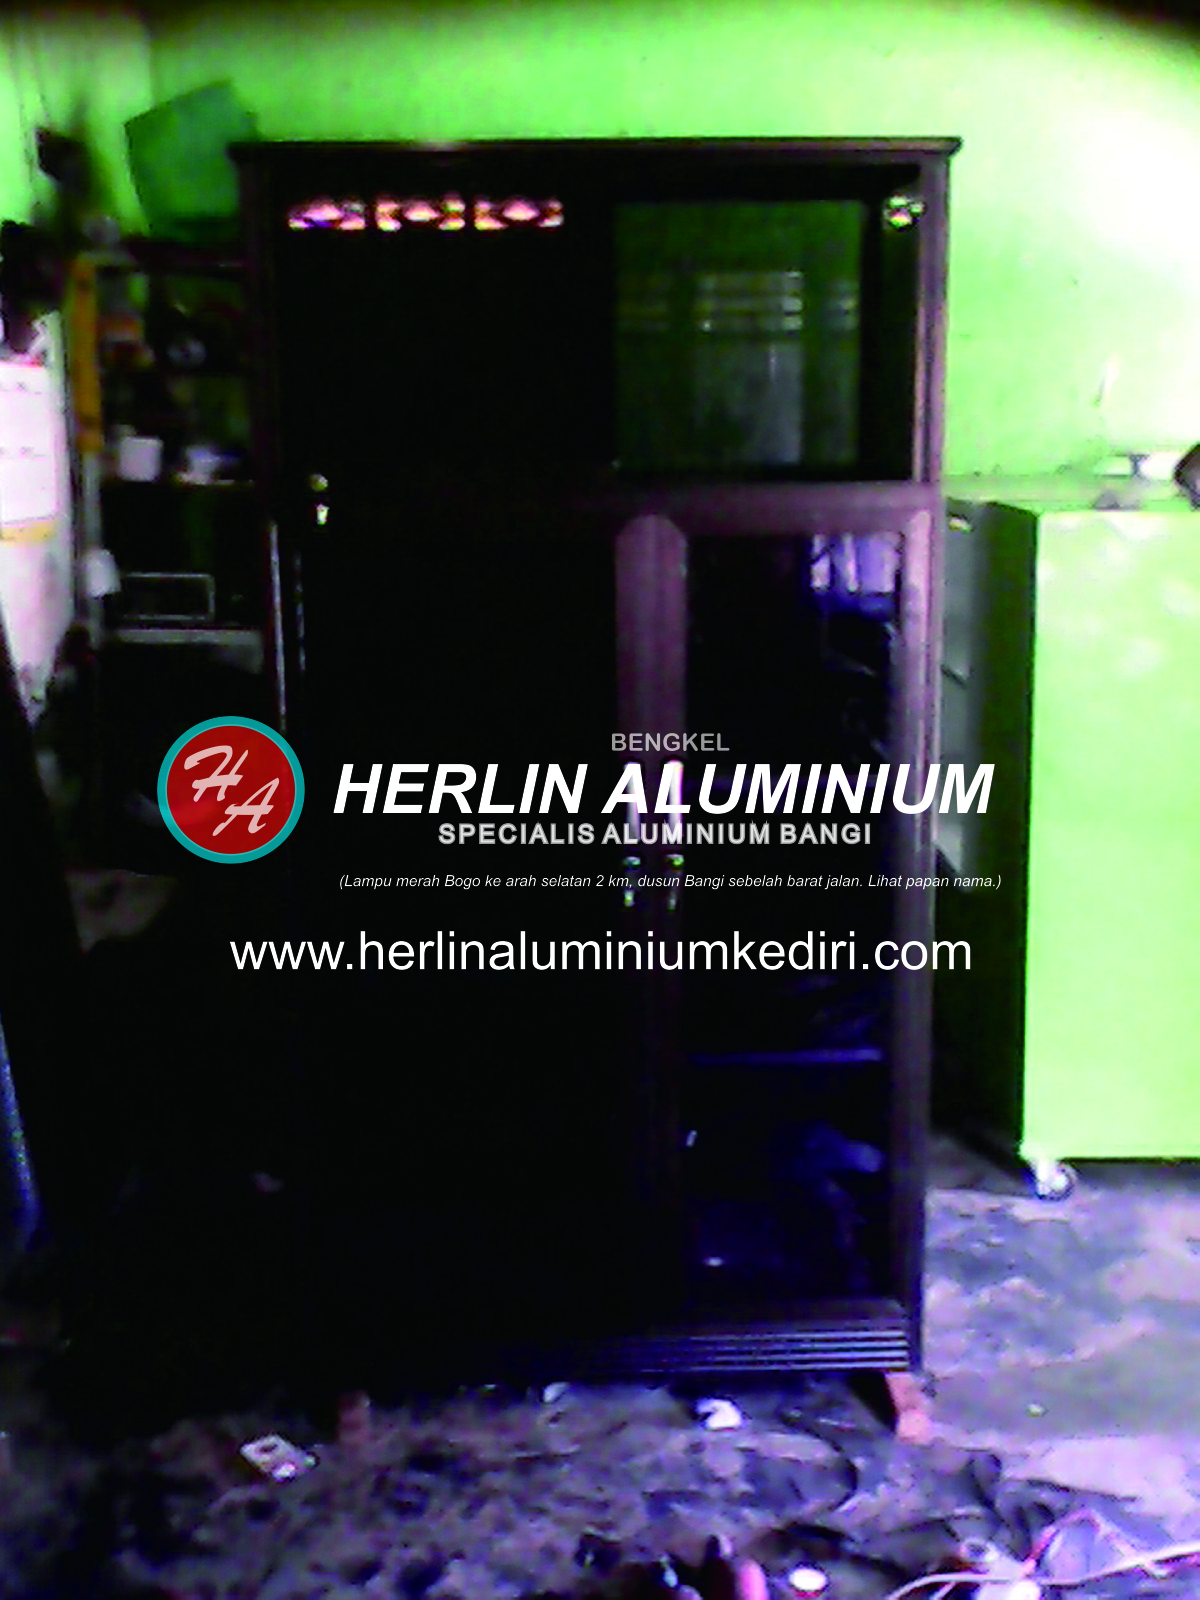 Daftar harga  Lemari  Pakaian  Aluminium di  Herlin Aluminium 